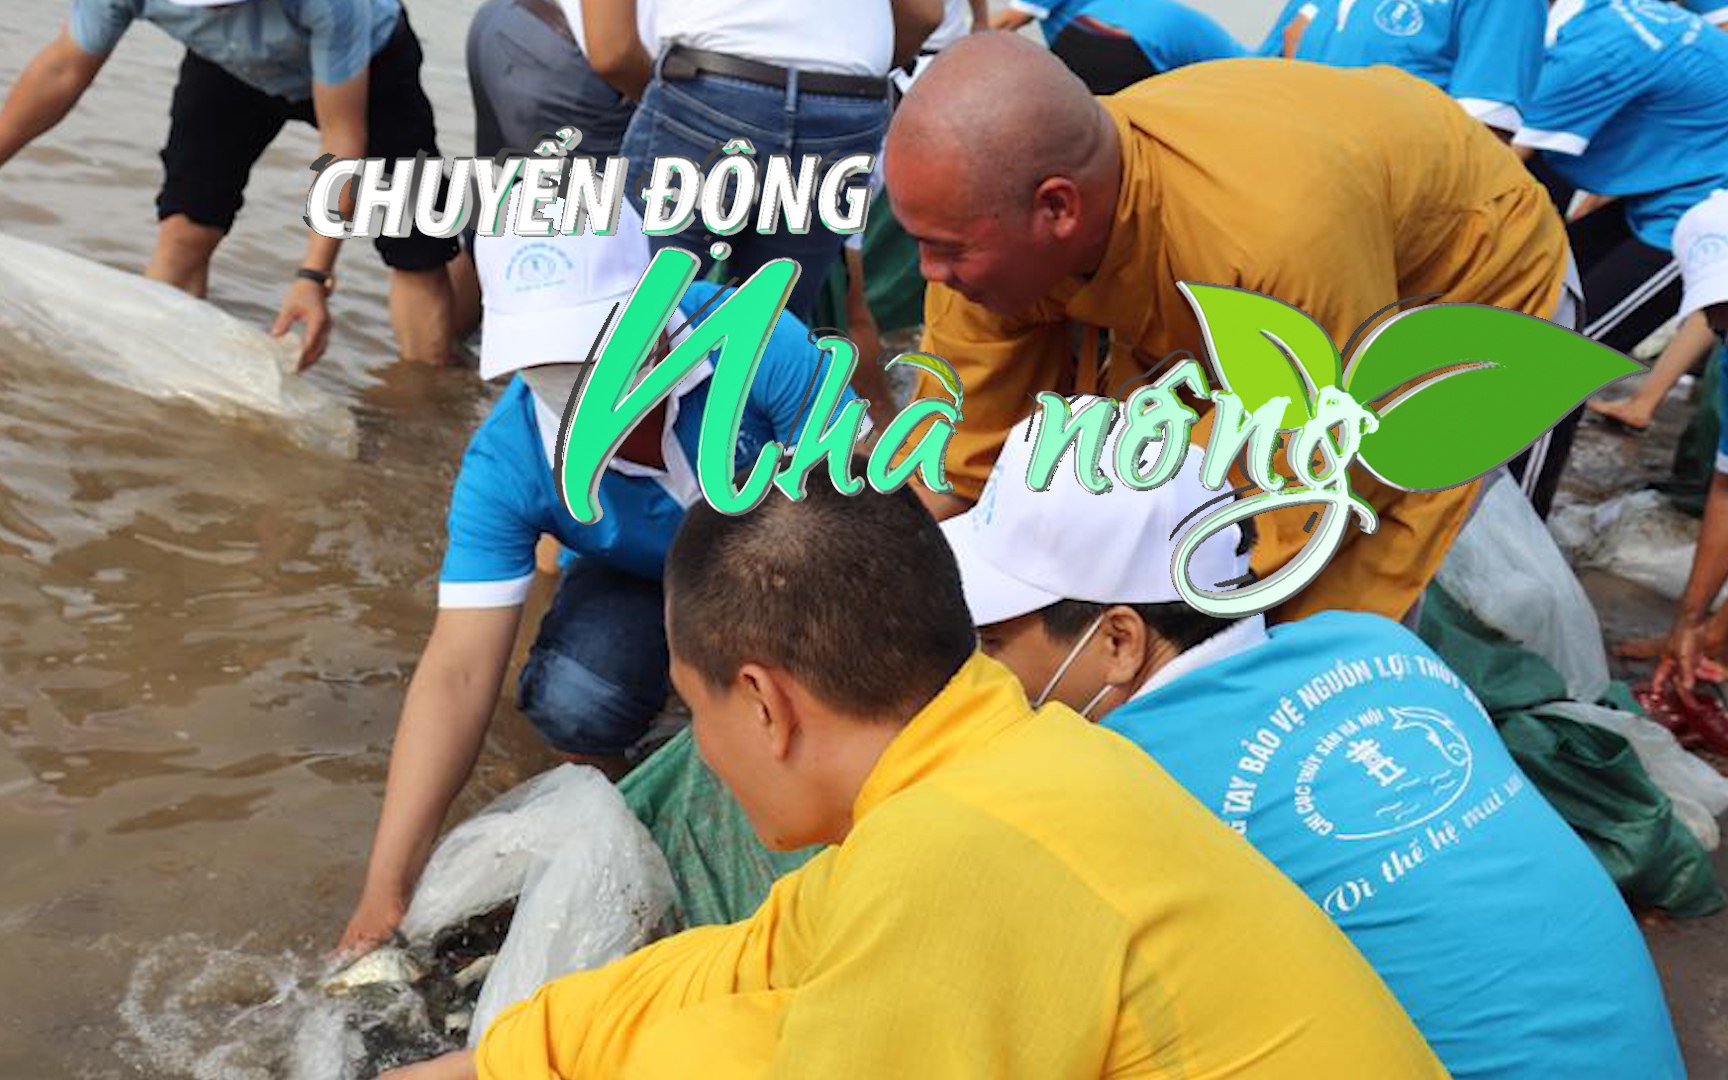 Chuyển động Nhà nông 30/7: Hà Nội thả 10.000 con cá giống tái tạo nguồn lợi thủy sản